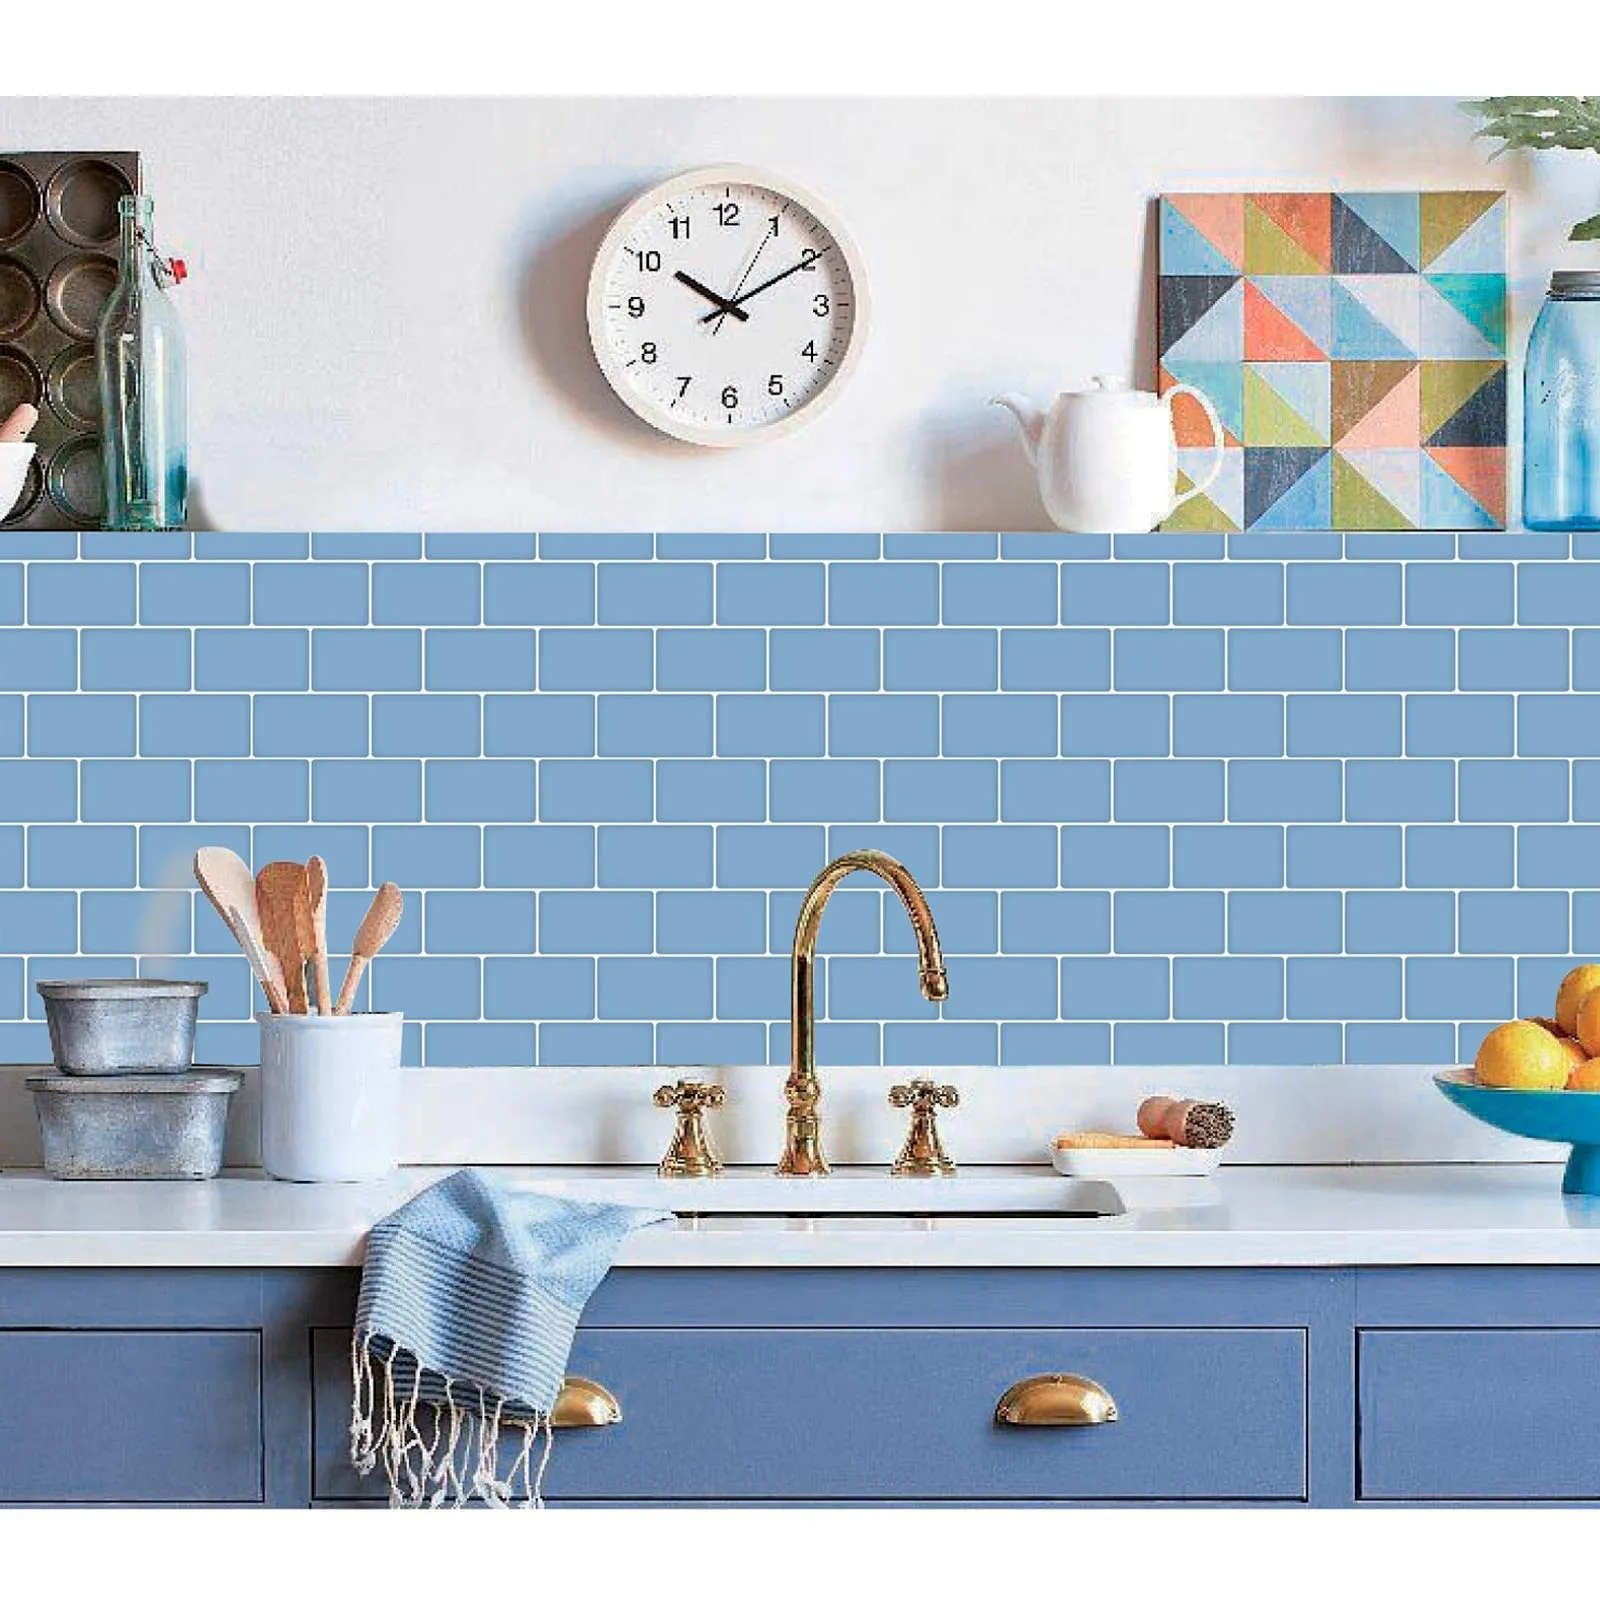 Art3d 30x30 cm Carreaux de dosseret à décoller et à coller autocollants muraux 3D pour cuisine salle de bain chambre buanderie, bleu clair brillant, papiers peints (10 feuilles)